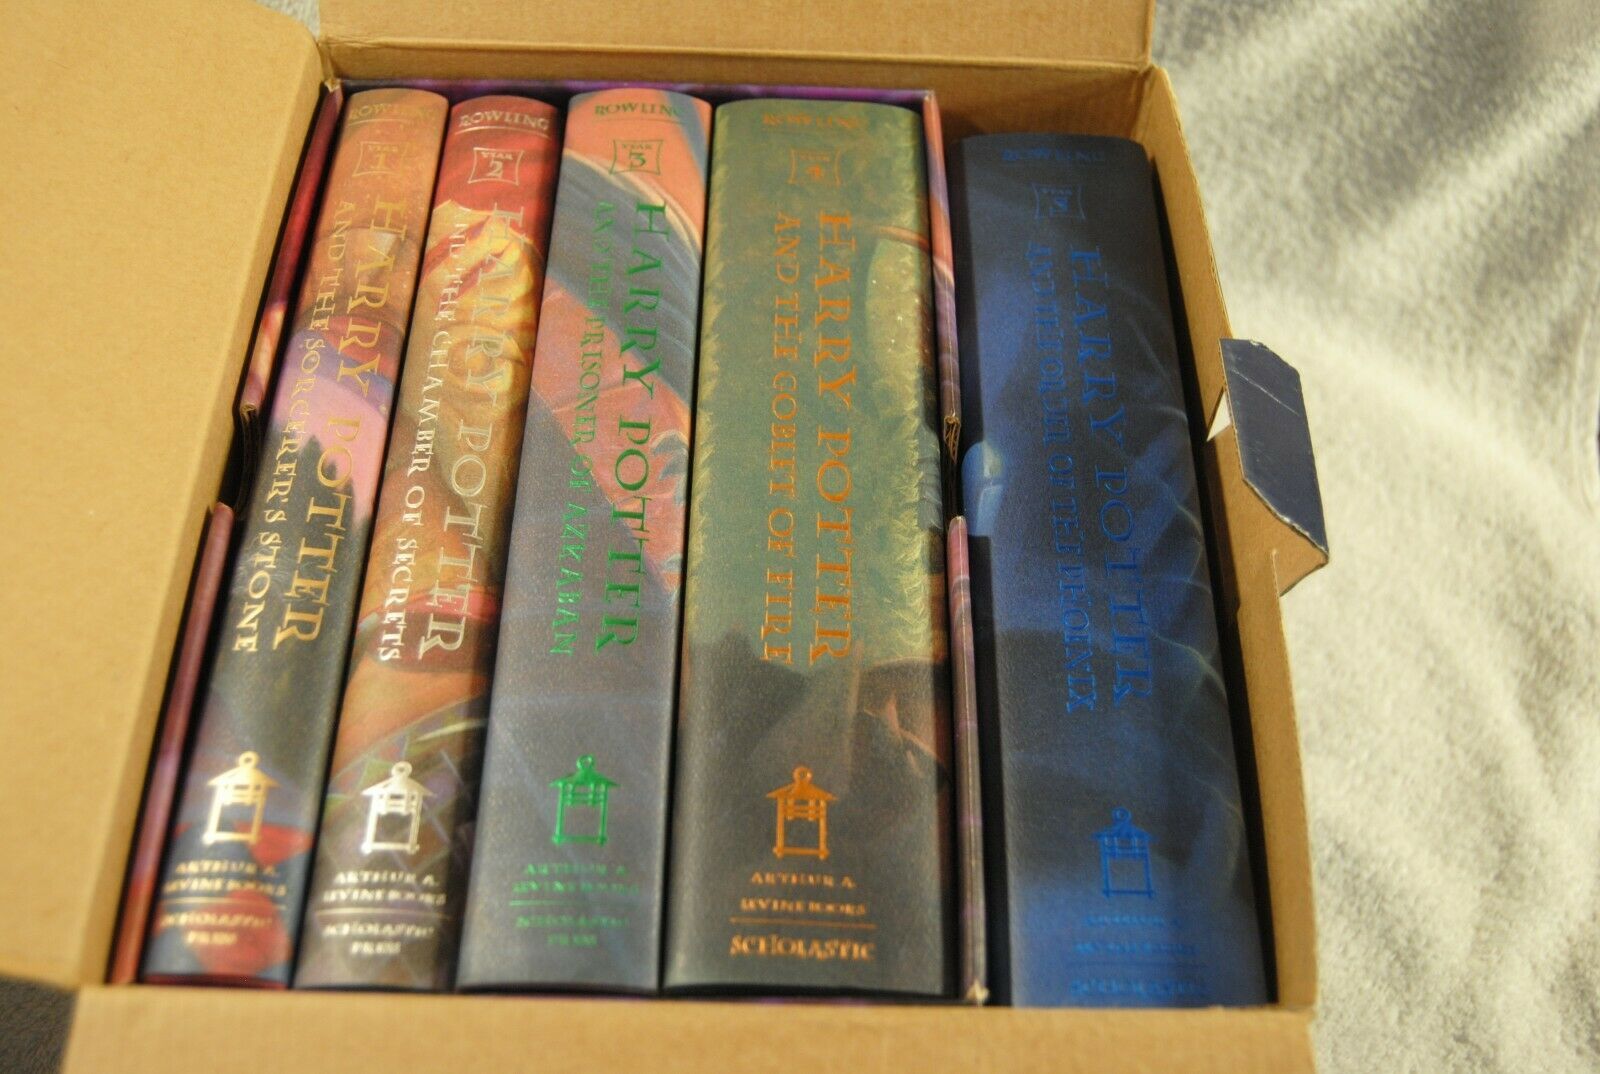 harry potter paperback box set books 1 7 paperback